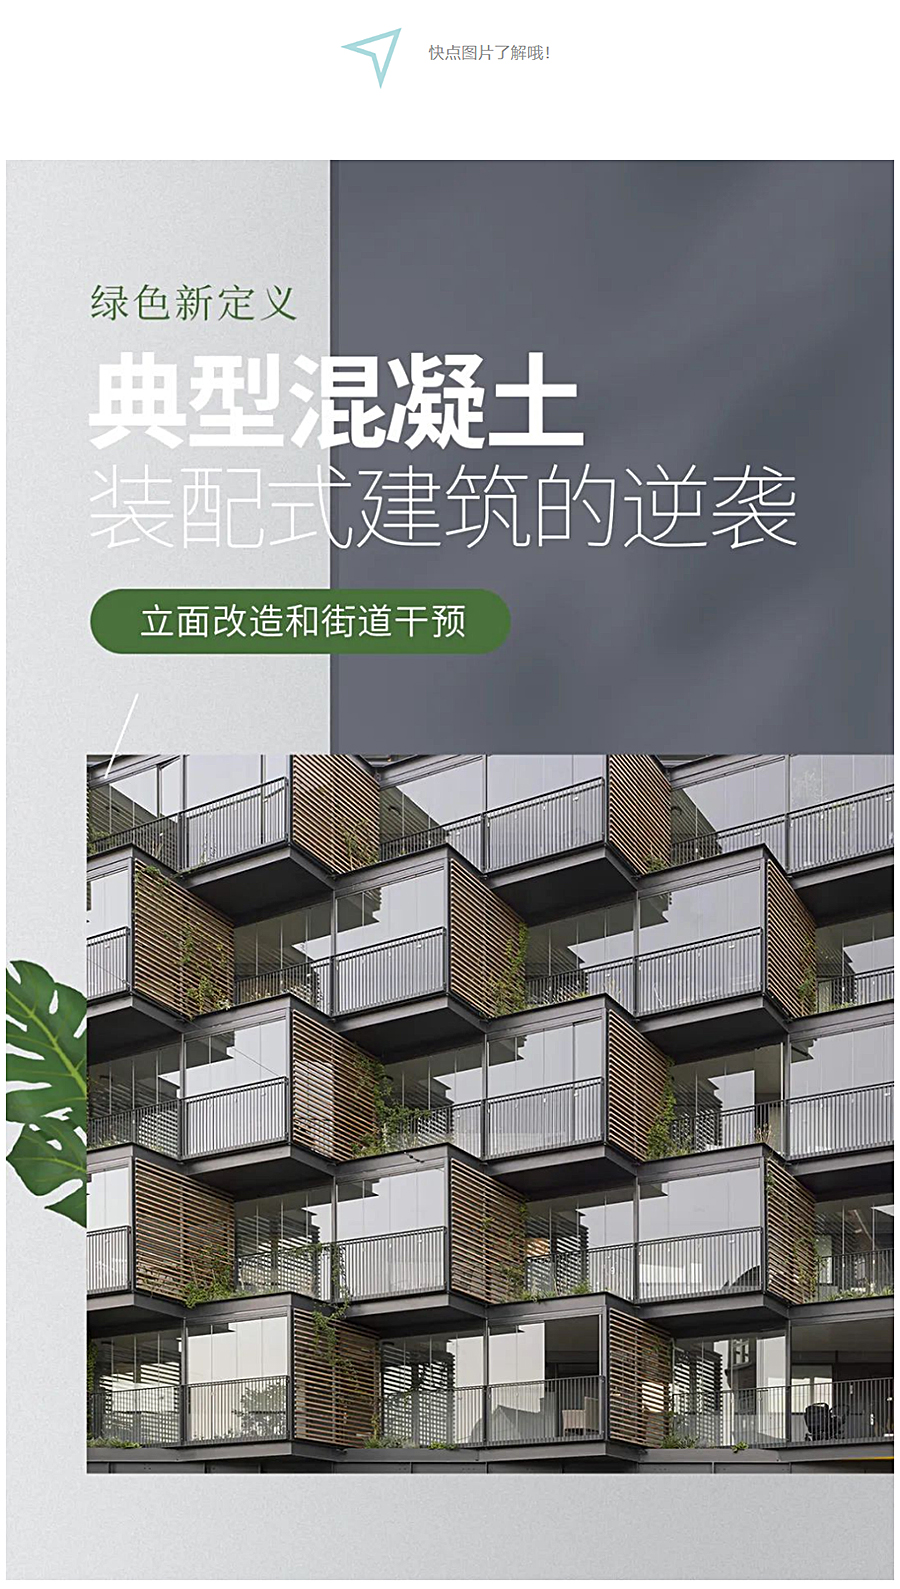 Renewal-Zone：绿色新定义｜典型混凝土装配式建筑的逆袭_0001_图层-2.jpg